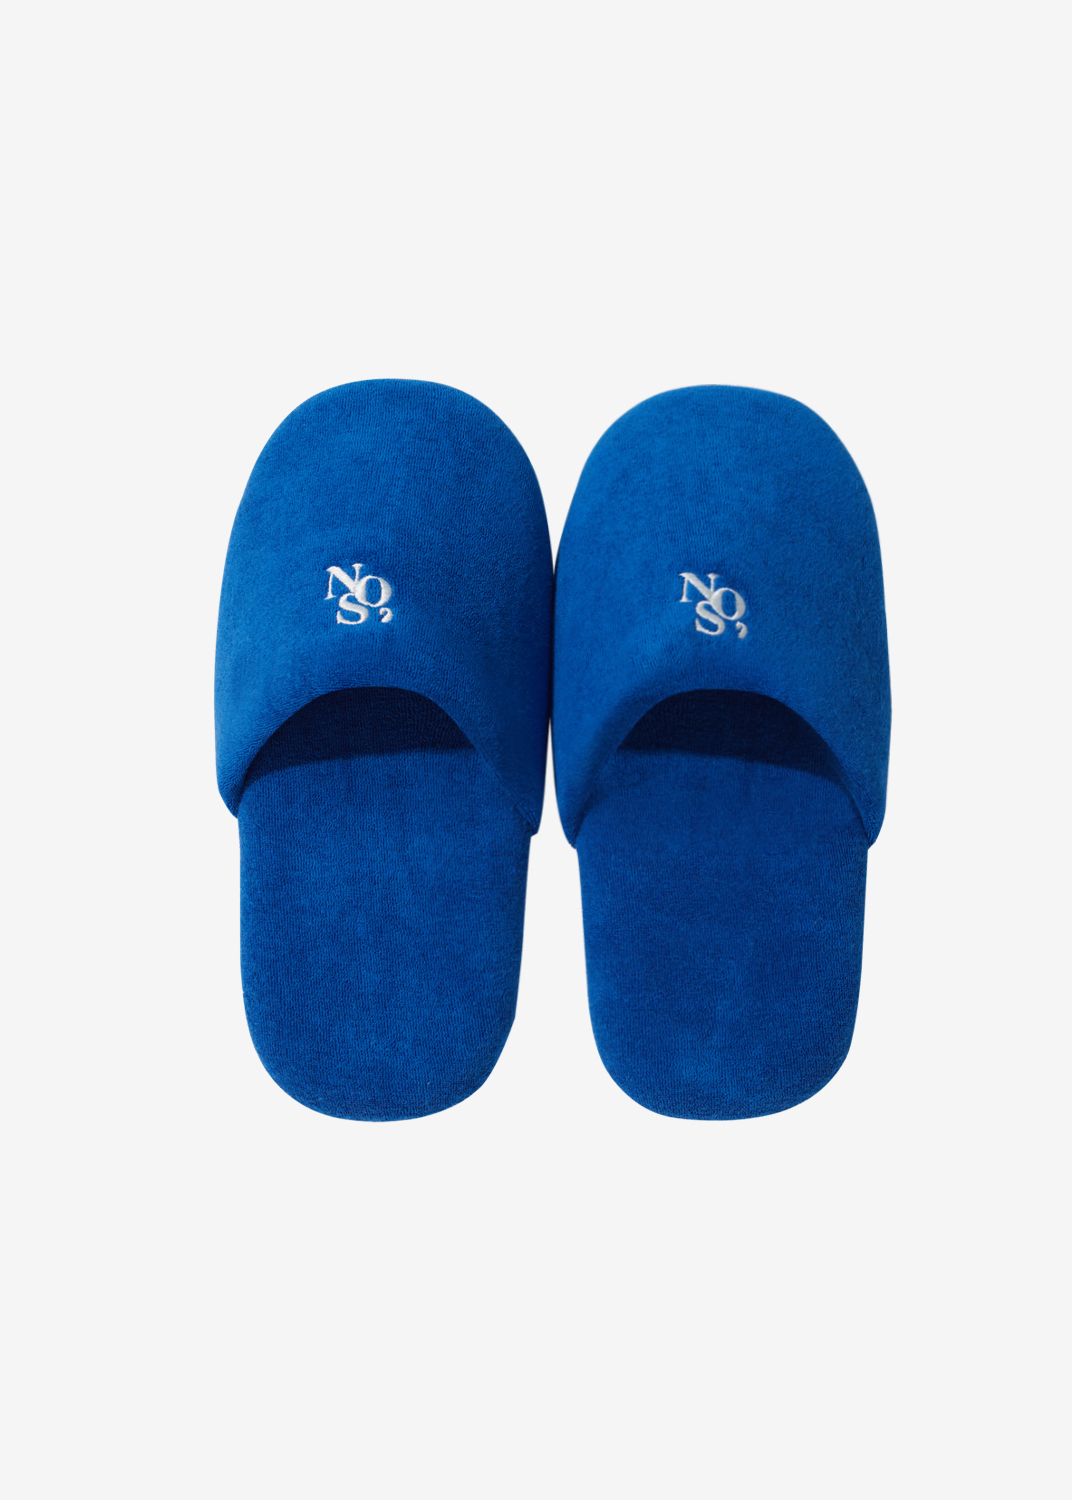 Signature symbol room slipper - Blue